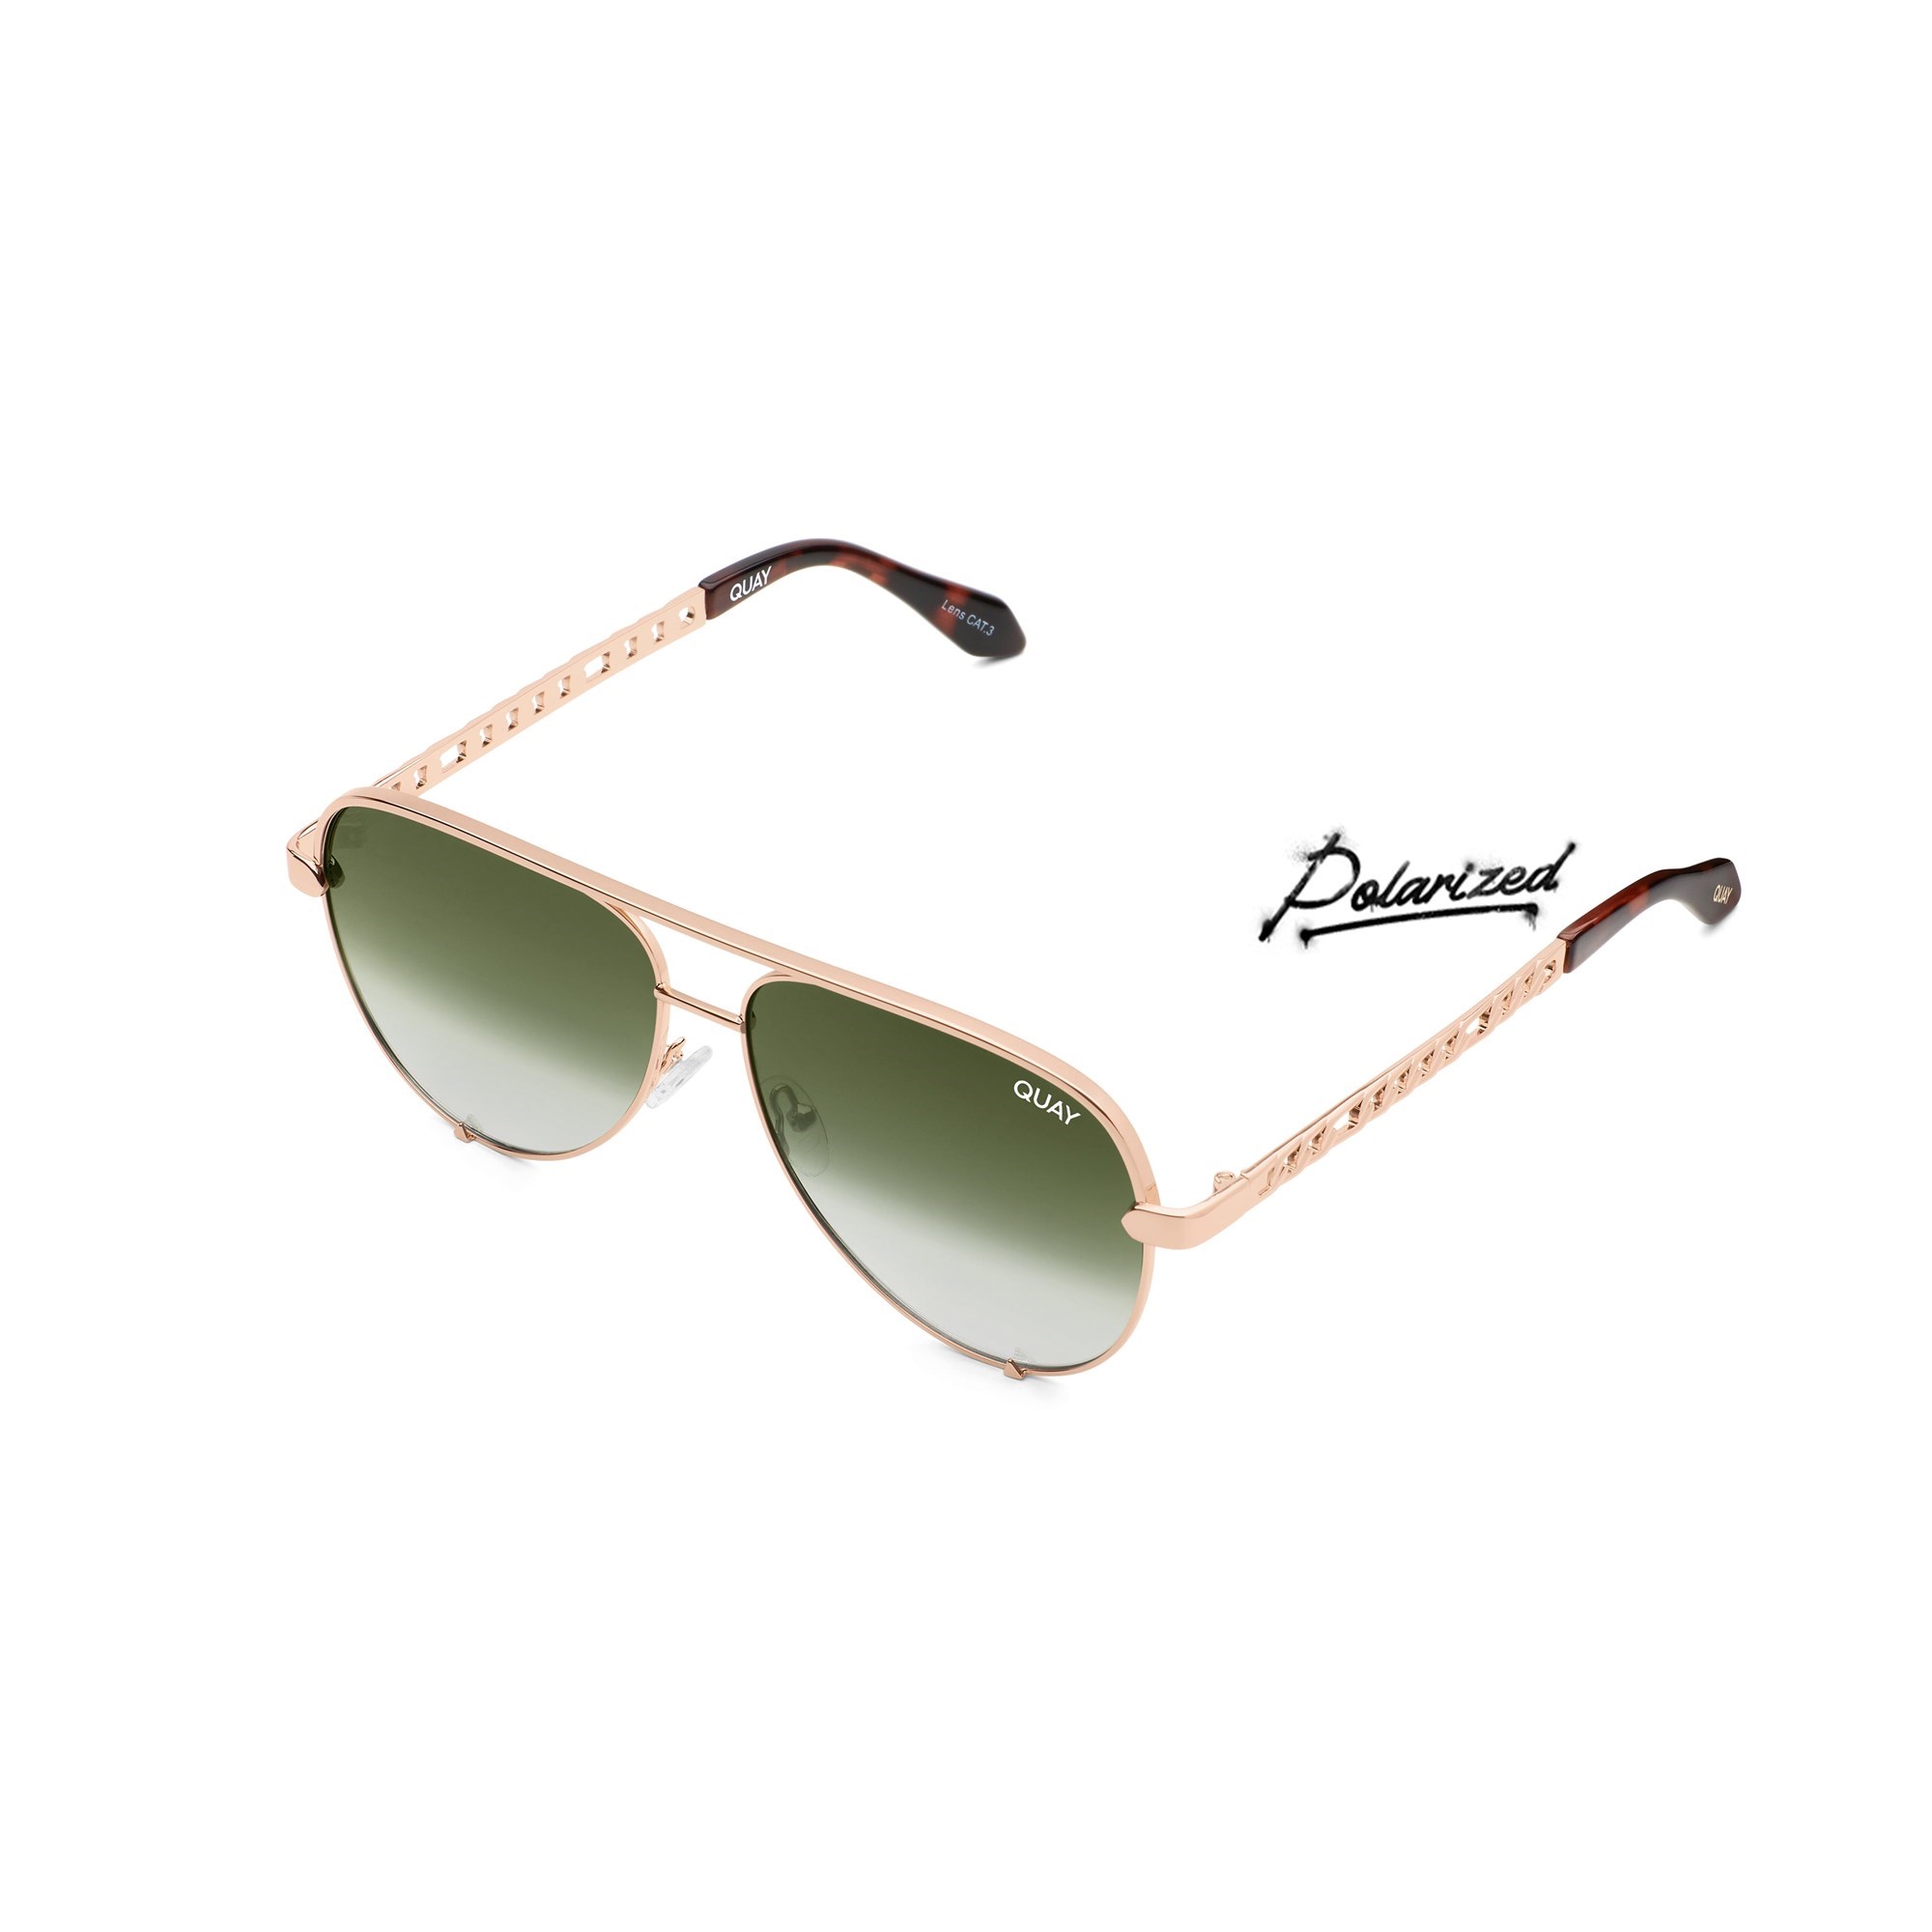 Sunglasses Online Store Australia | Arktastic